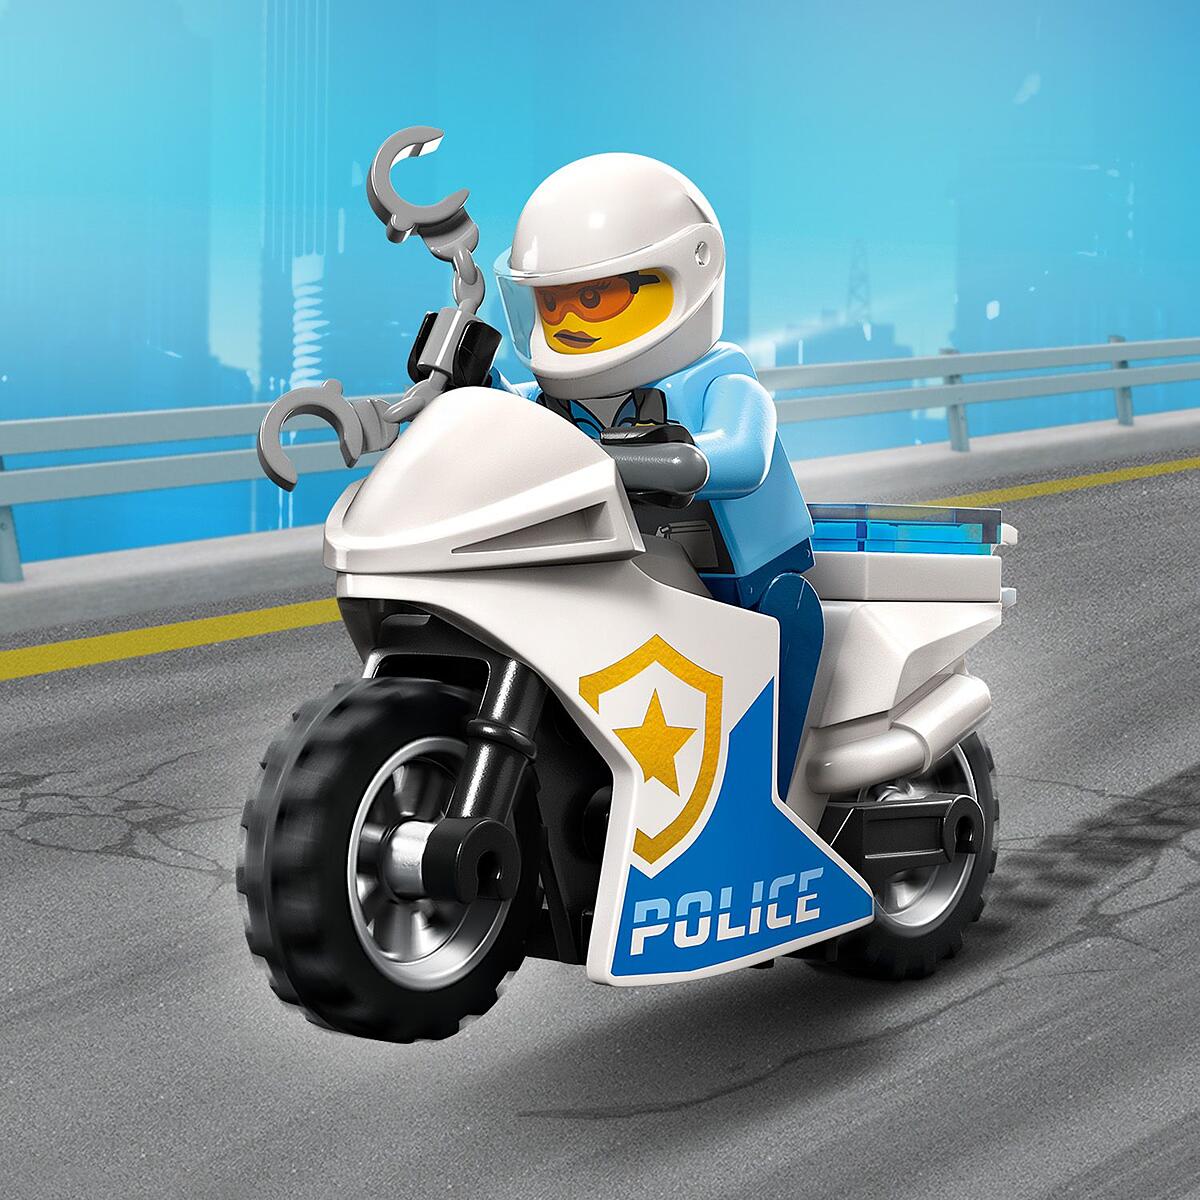 Motocicleta da polícia maneira